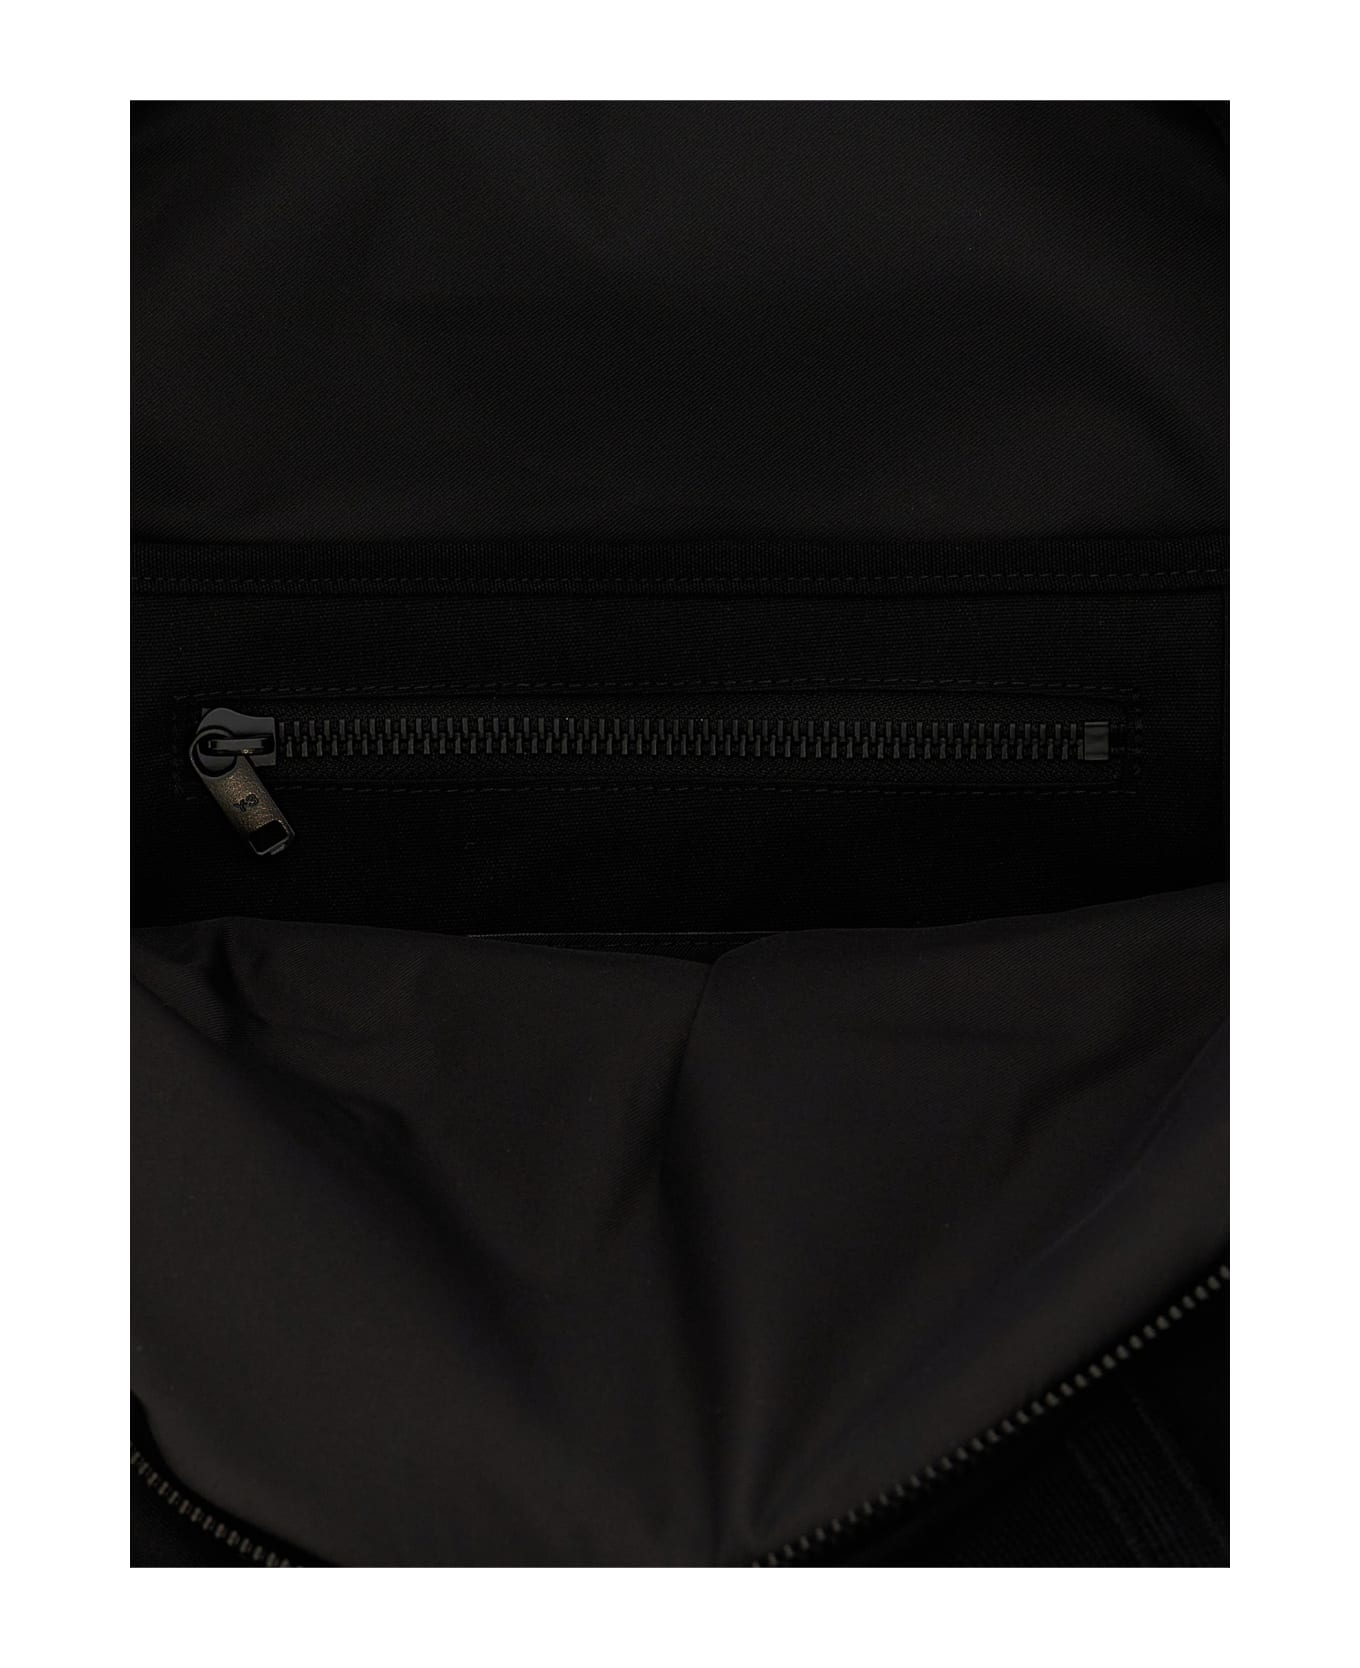 Y-3 'utility' Backpack - Black  